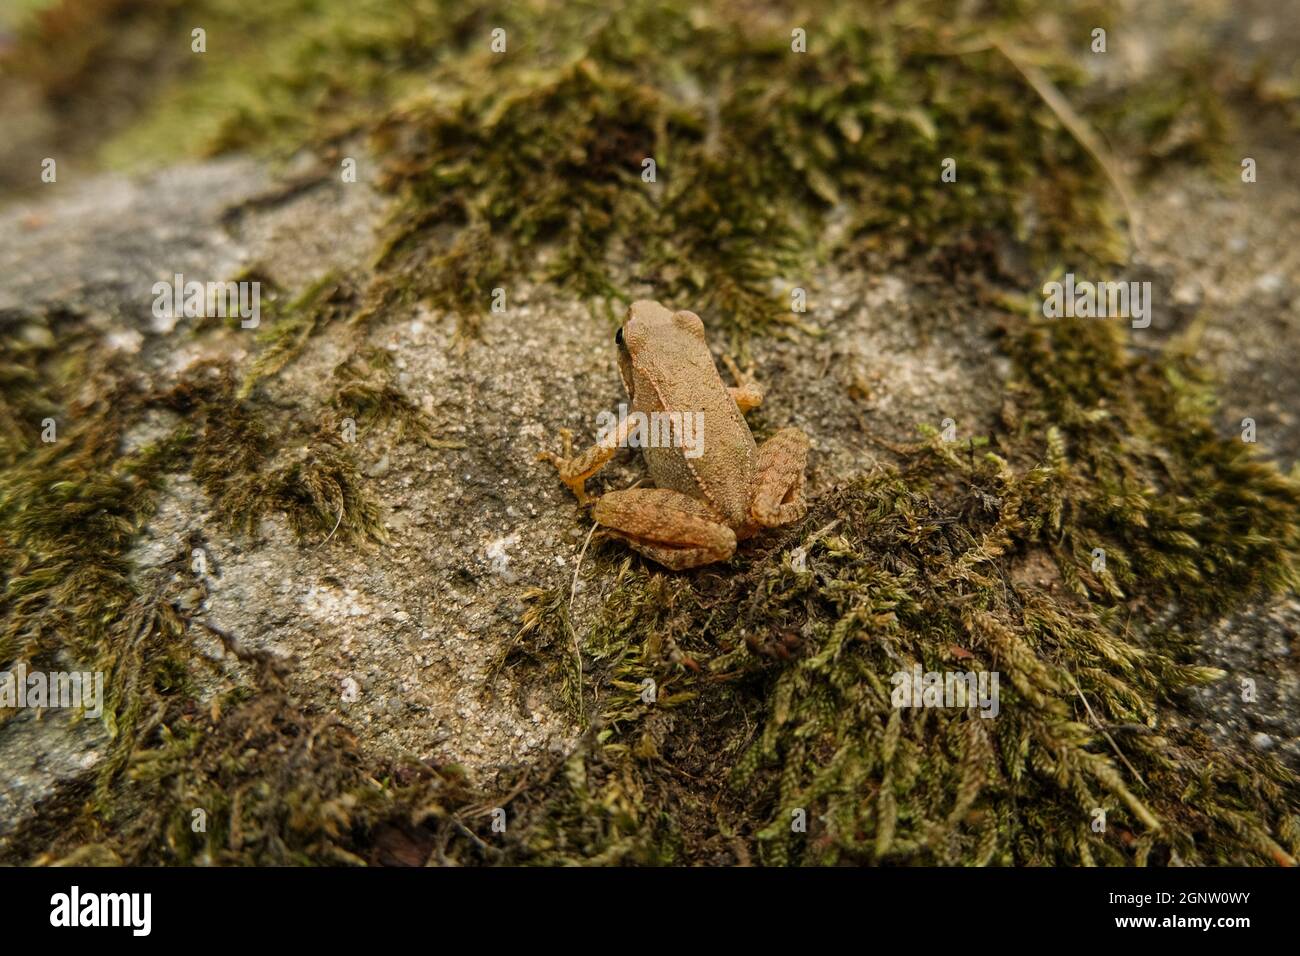 La rana salvaje se encuentra de cerca mientras descansa sobre el ecosistema del bosque, animales anfibios Foto de stock